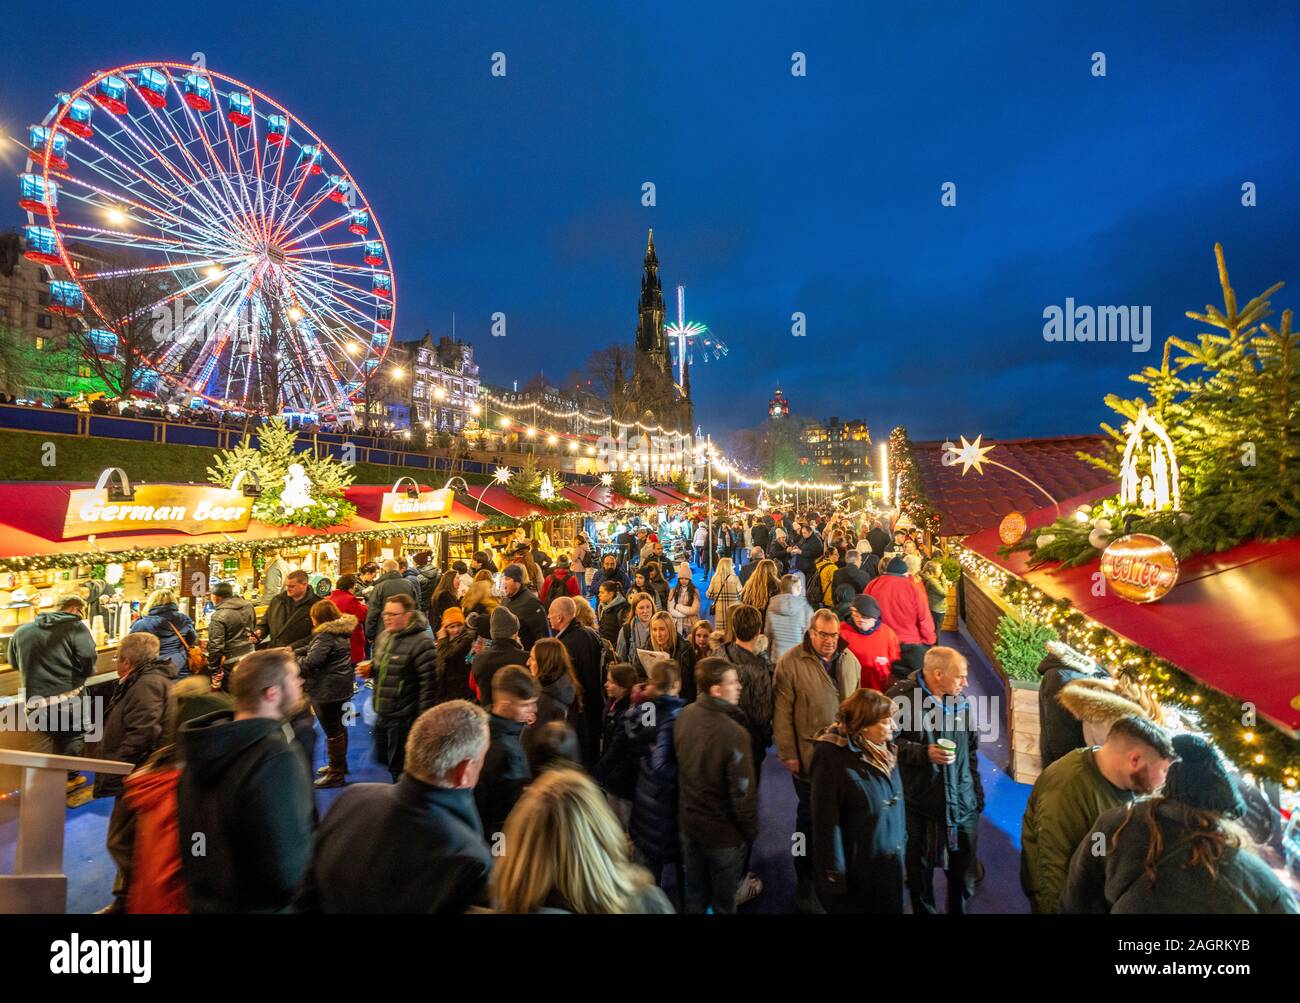 Massen von Menschen in den Beschäftigten Edinburgh Weihnachtsmarkt in West Princes Street Gardens in Edinburgh, Schottland, Großbritannien Stockfoto